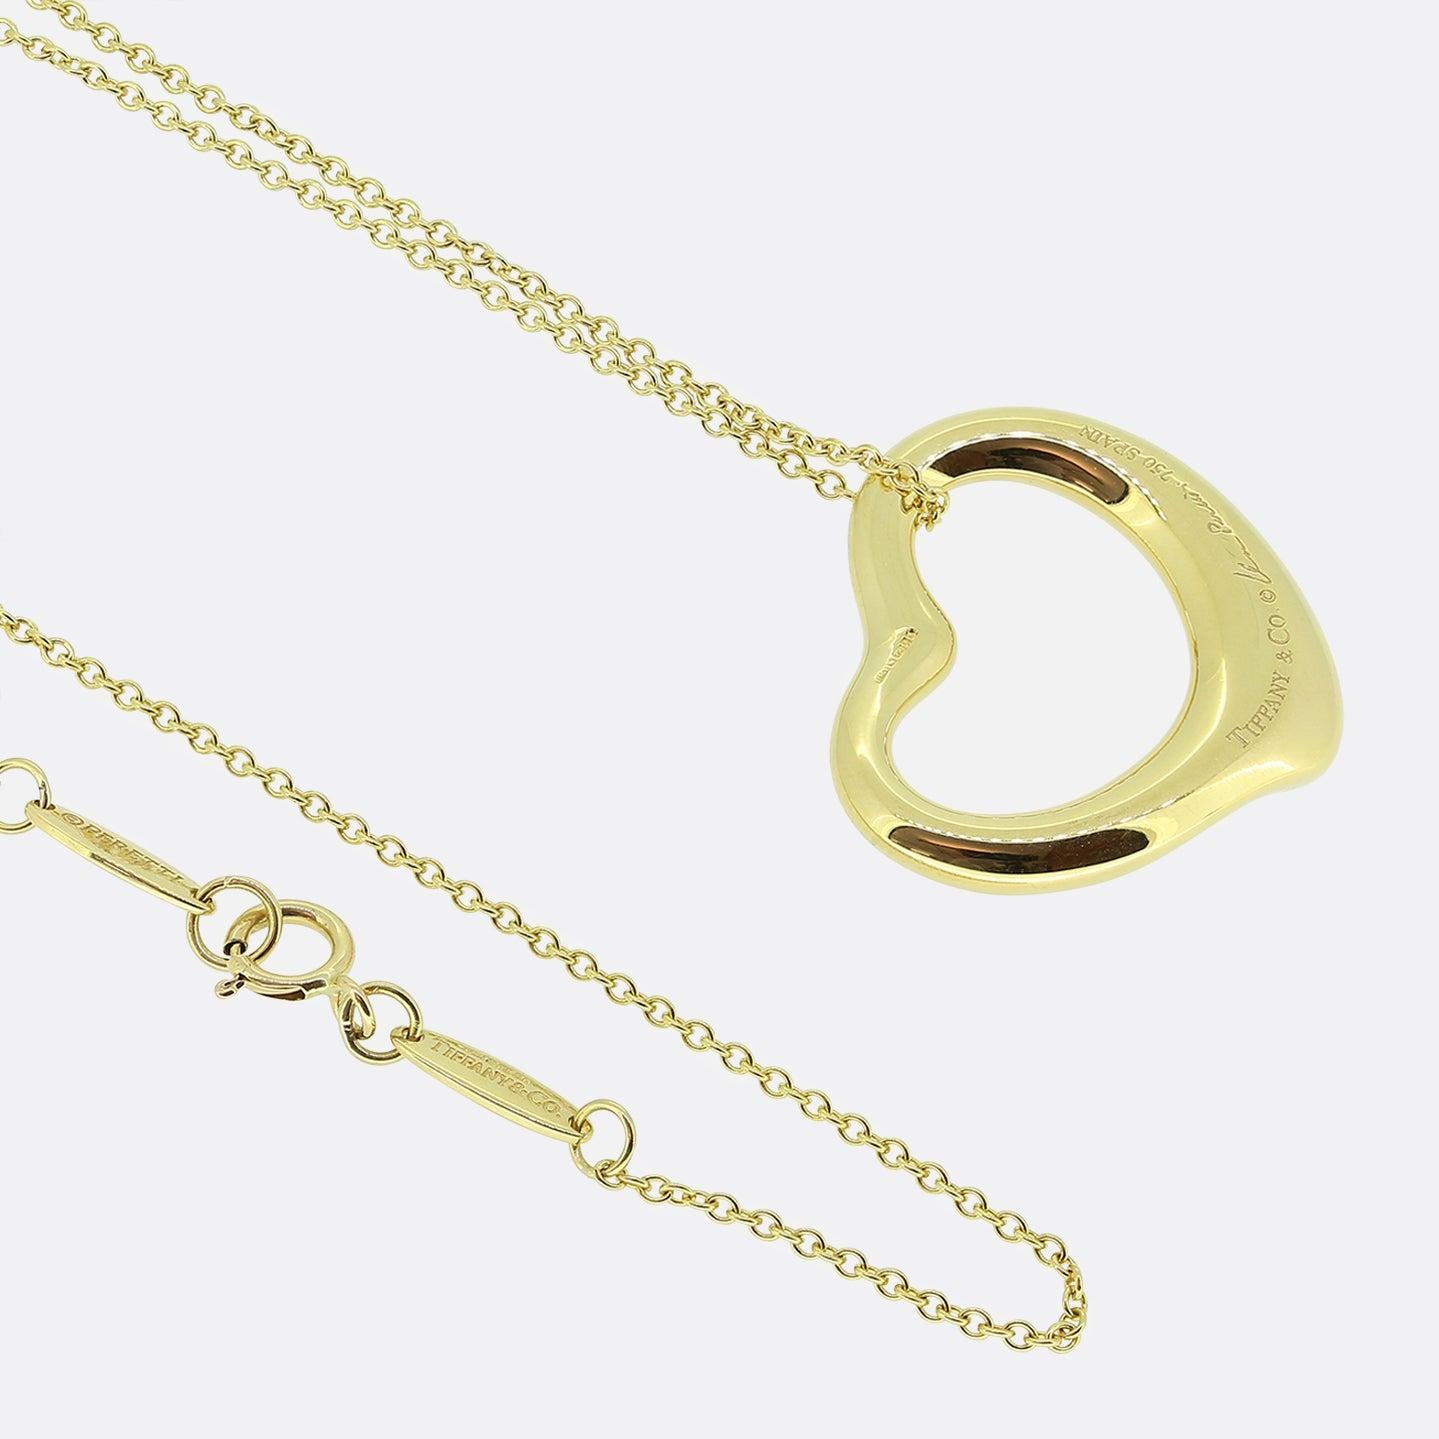 Brilliant Cut Tiffany & Co. Open Heart Diamond Pendant Necklace For Sale